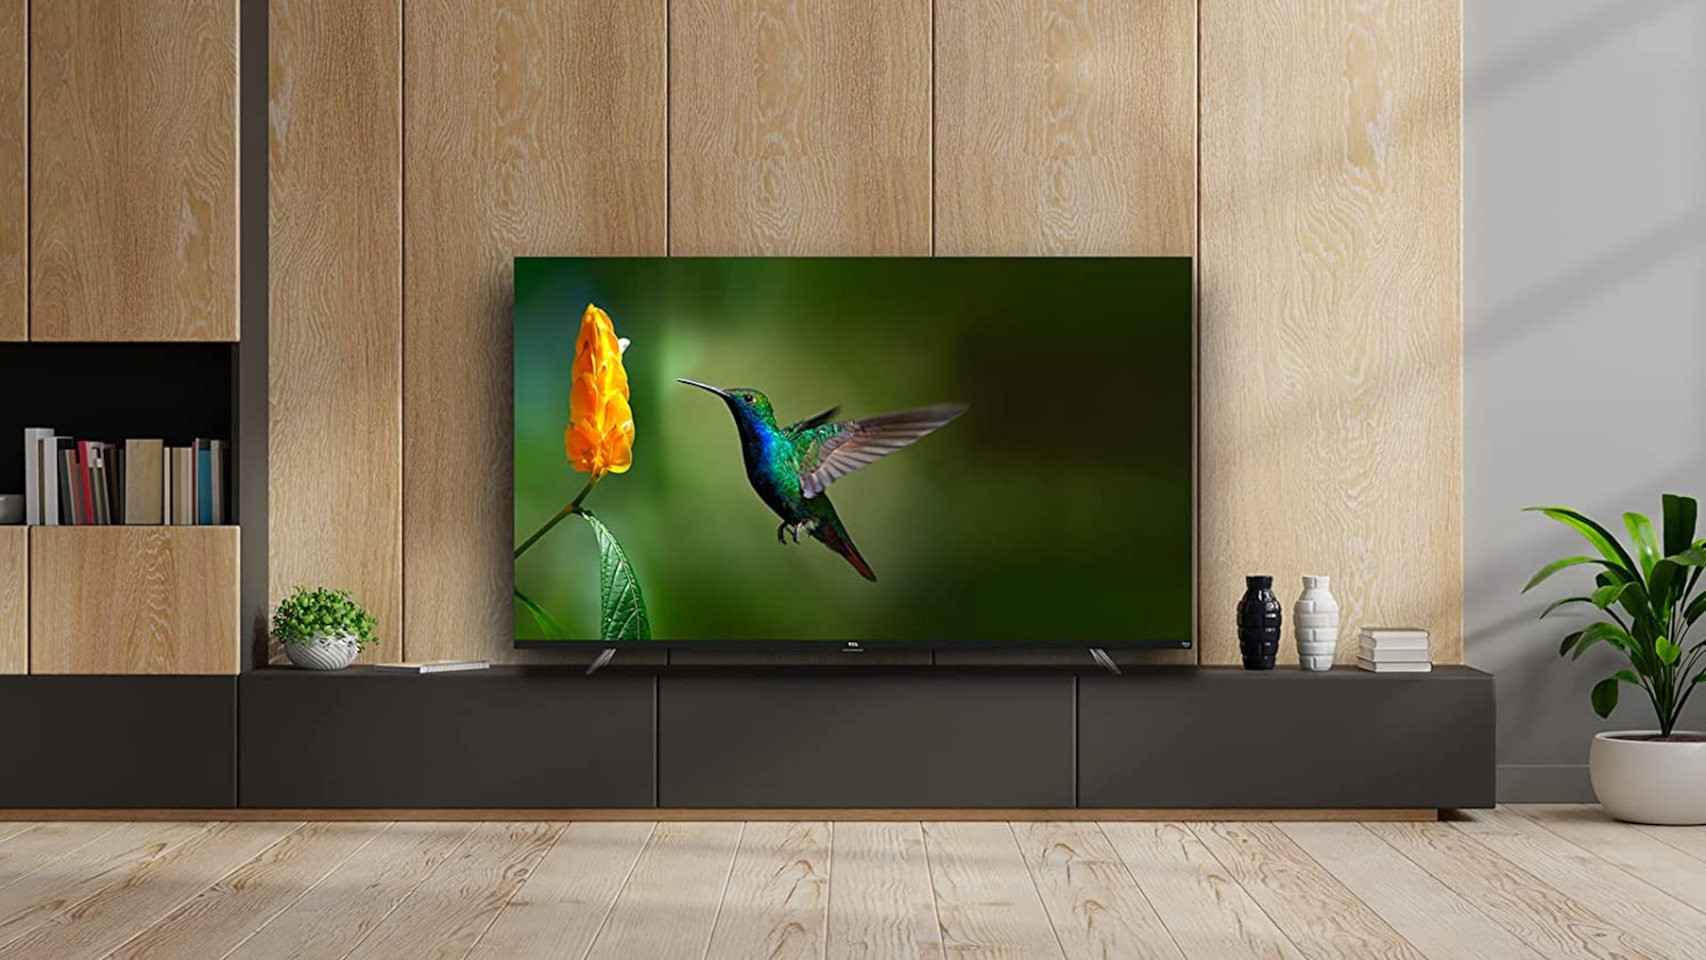 Nuevo TCL CF6, televisor Smart TV disponible en Amazon